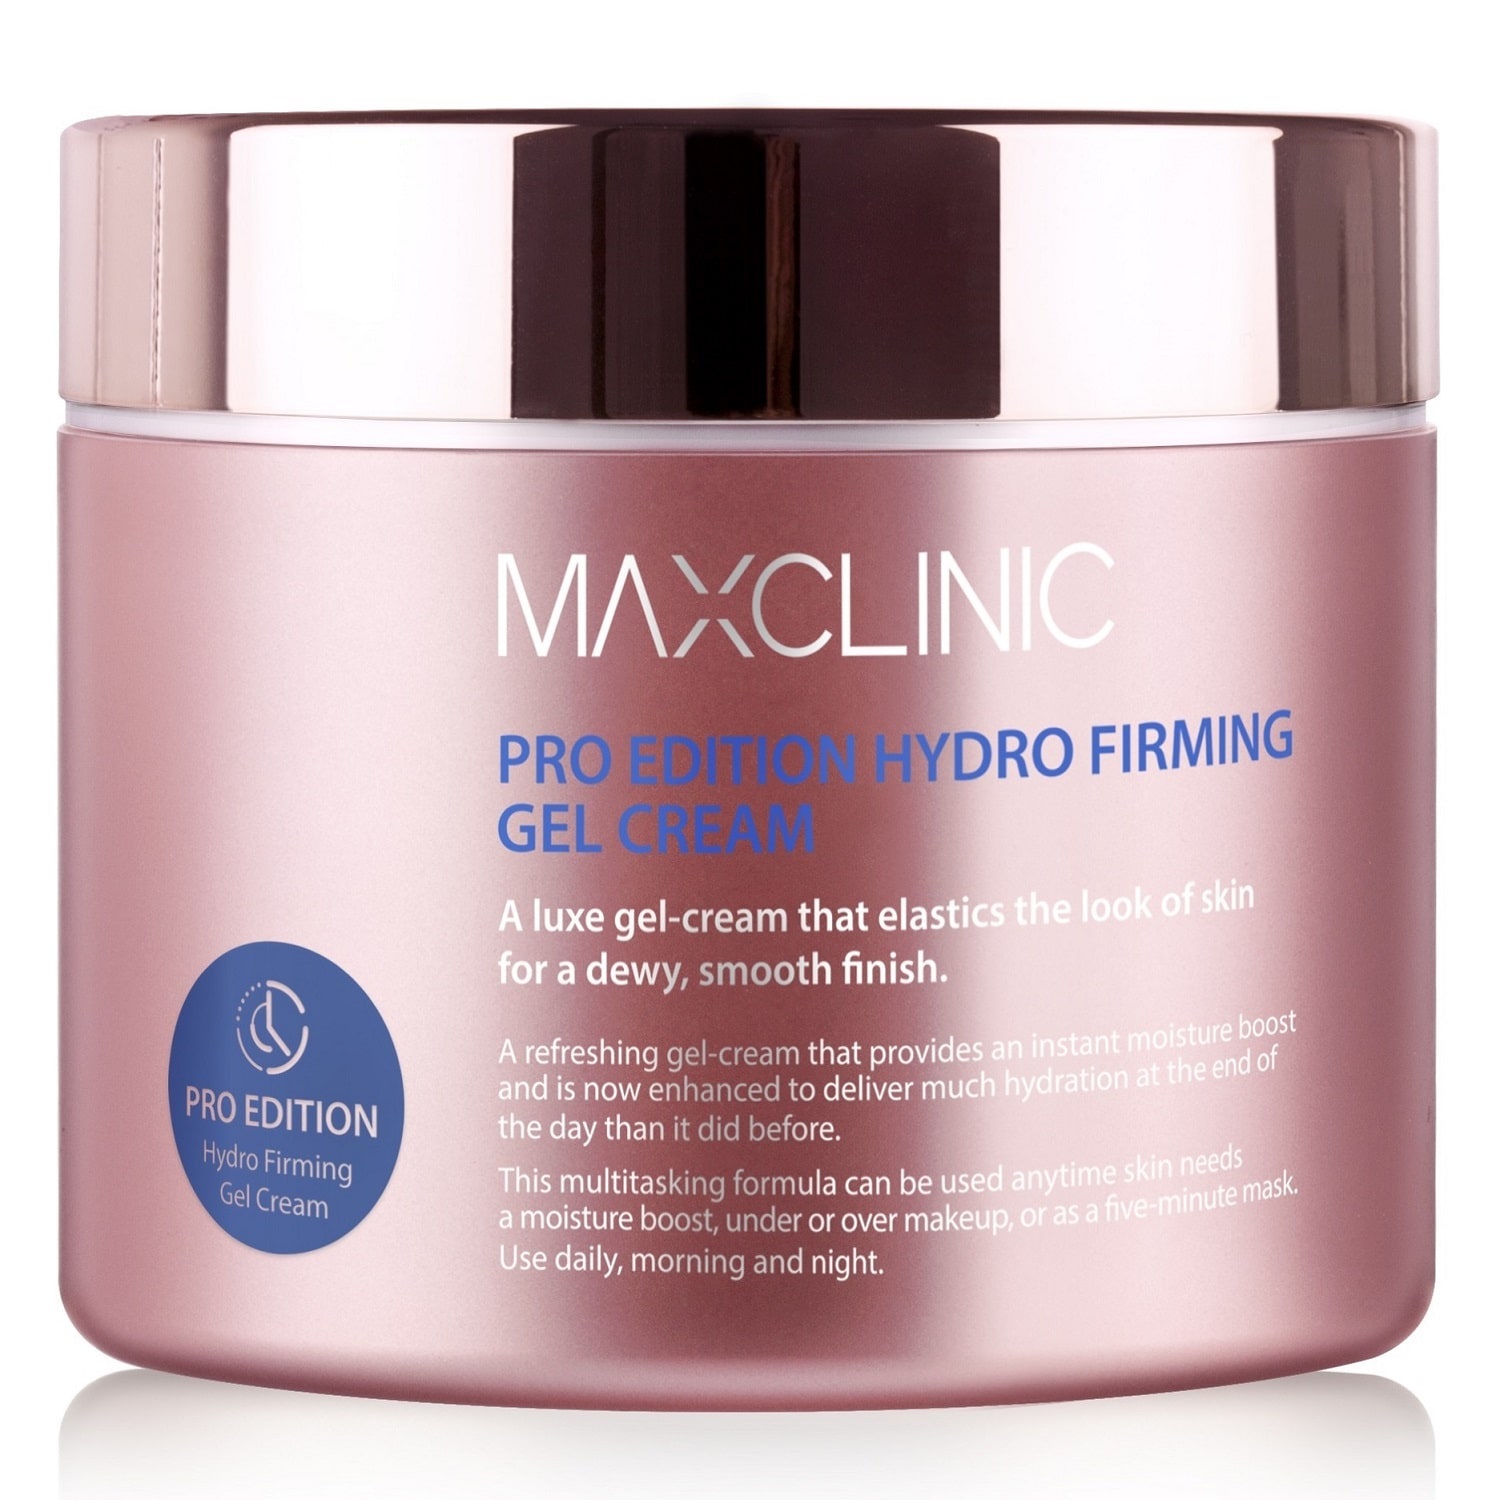 maxclinic pro edition hydro firming gel tonner гель тонер укрепляющий для восстановления водного баланса 500мл Maxclinic Укрепляющий крем-гель для эластичности и увлажнения кожи Pro-Edition Hydro Firming Gel Cream, 200 г (Maxclinic, Face Care)